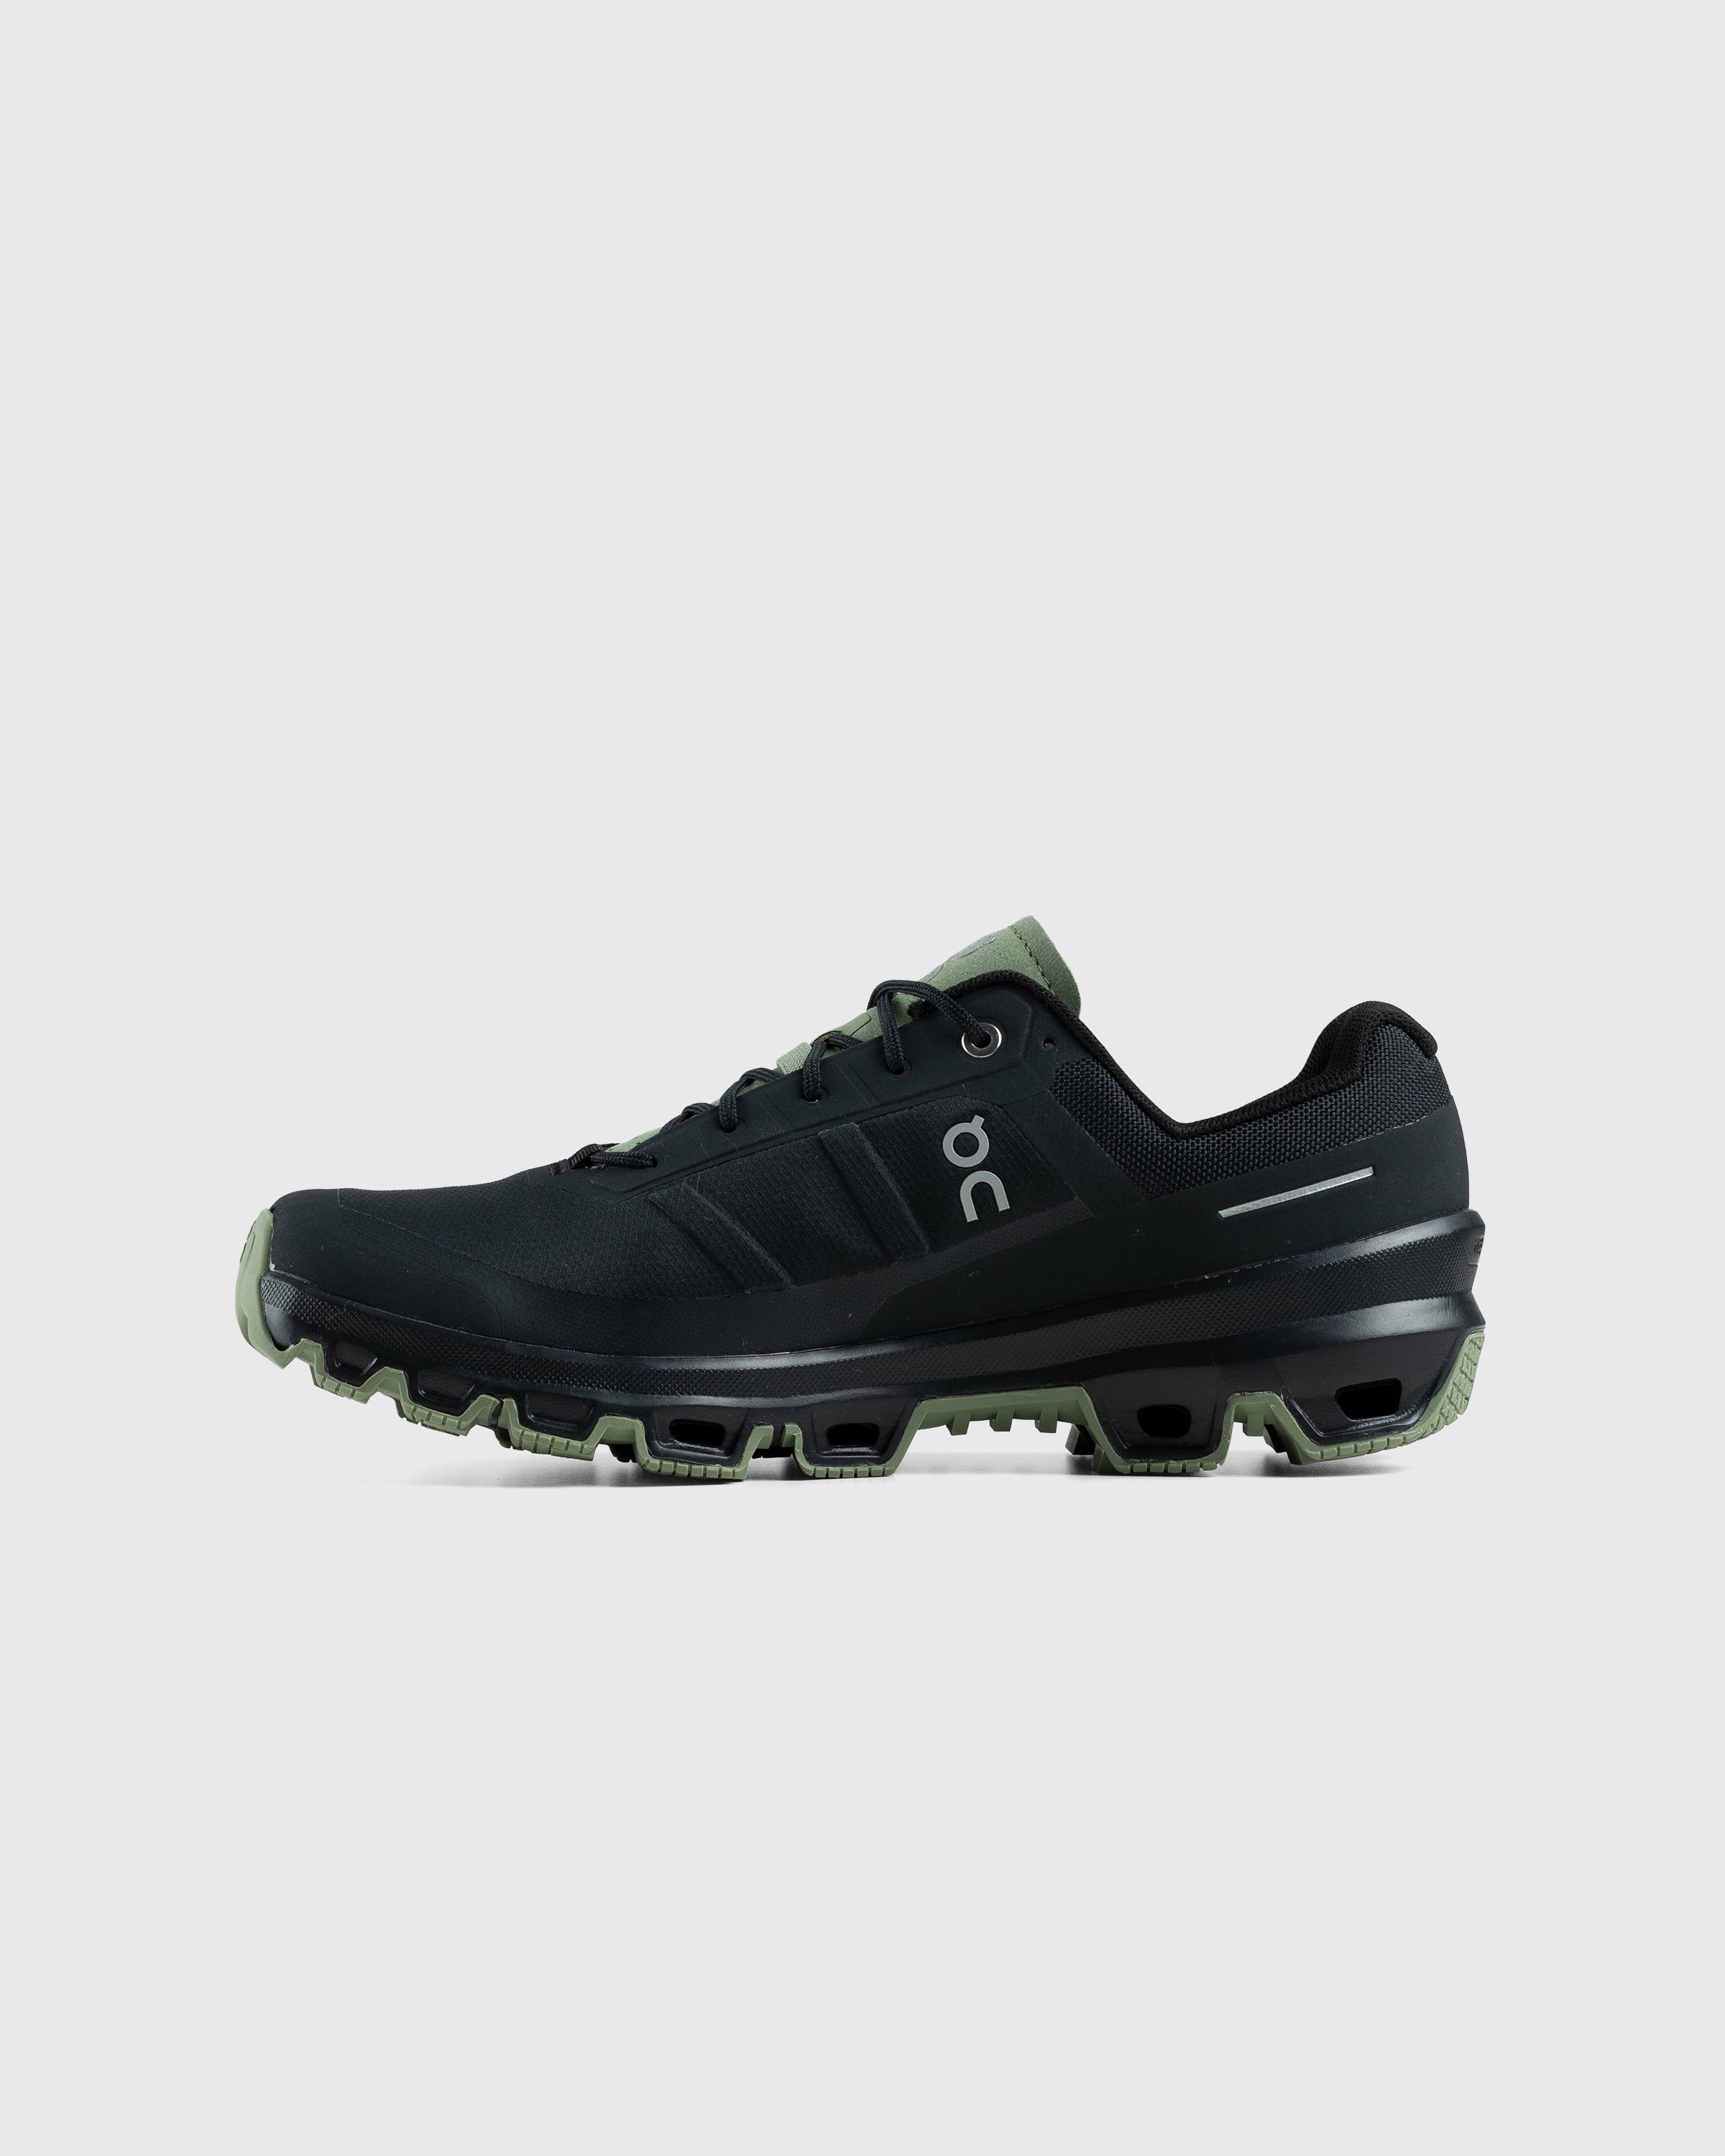 On - Cloudventure Black/Reseda - Footwear - Black - Image 2